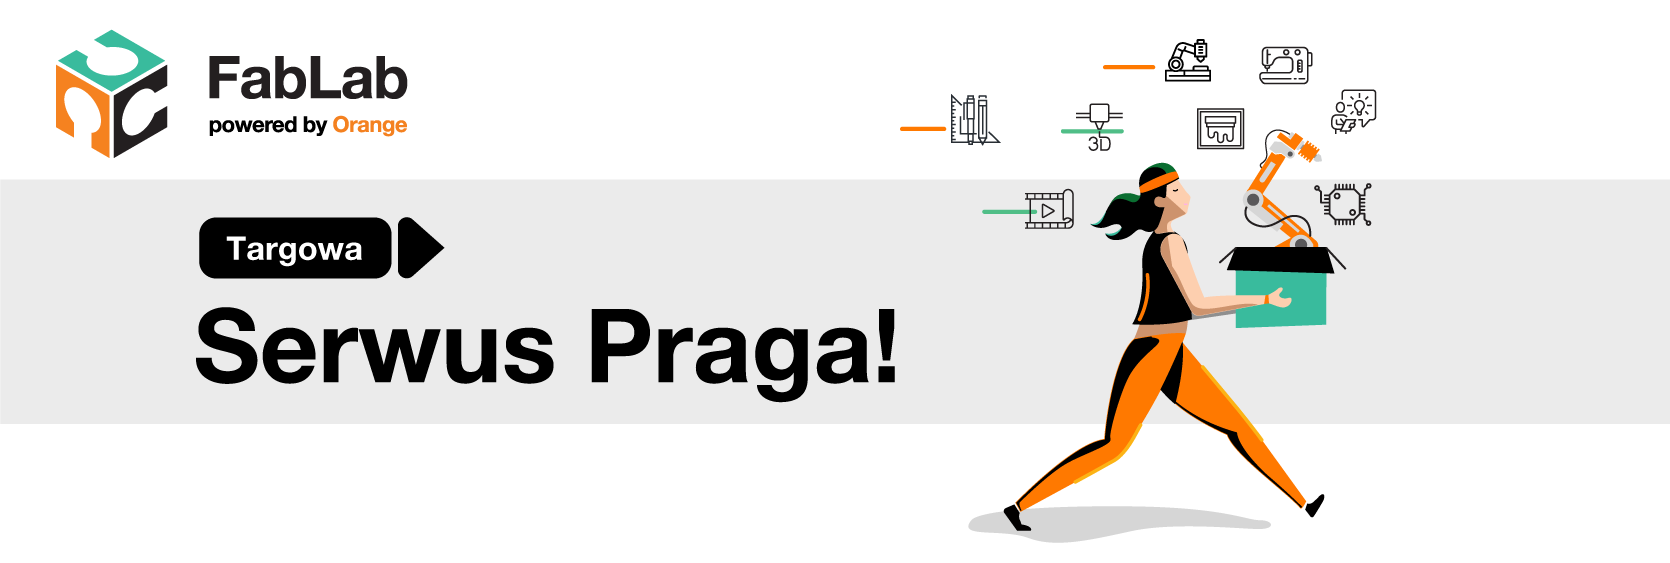 FabLab powered by Orange Warszawa